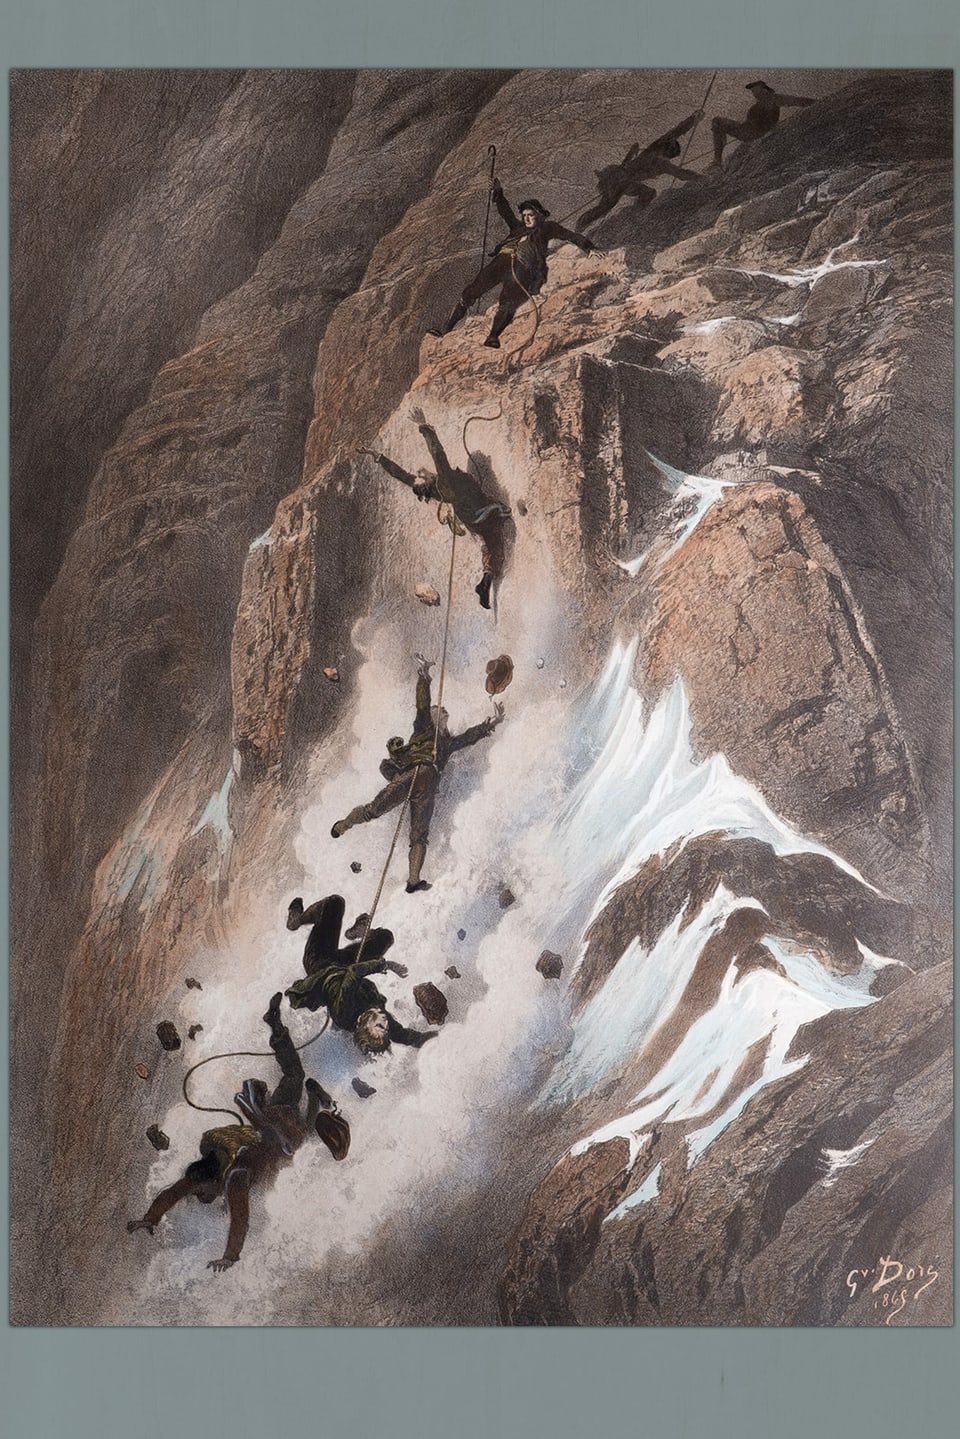 eine Zeichnung von mehreren Bergsteigern, die beim Abstieg stürzen